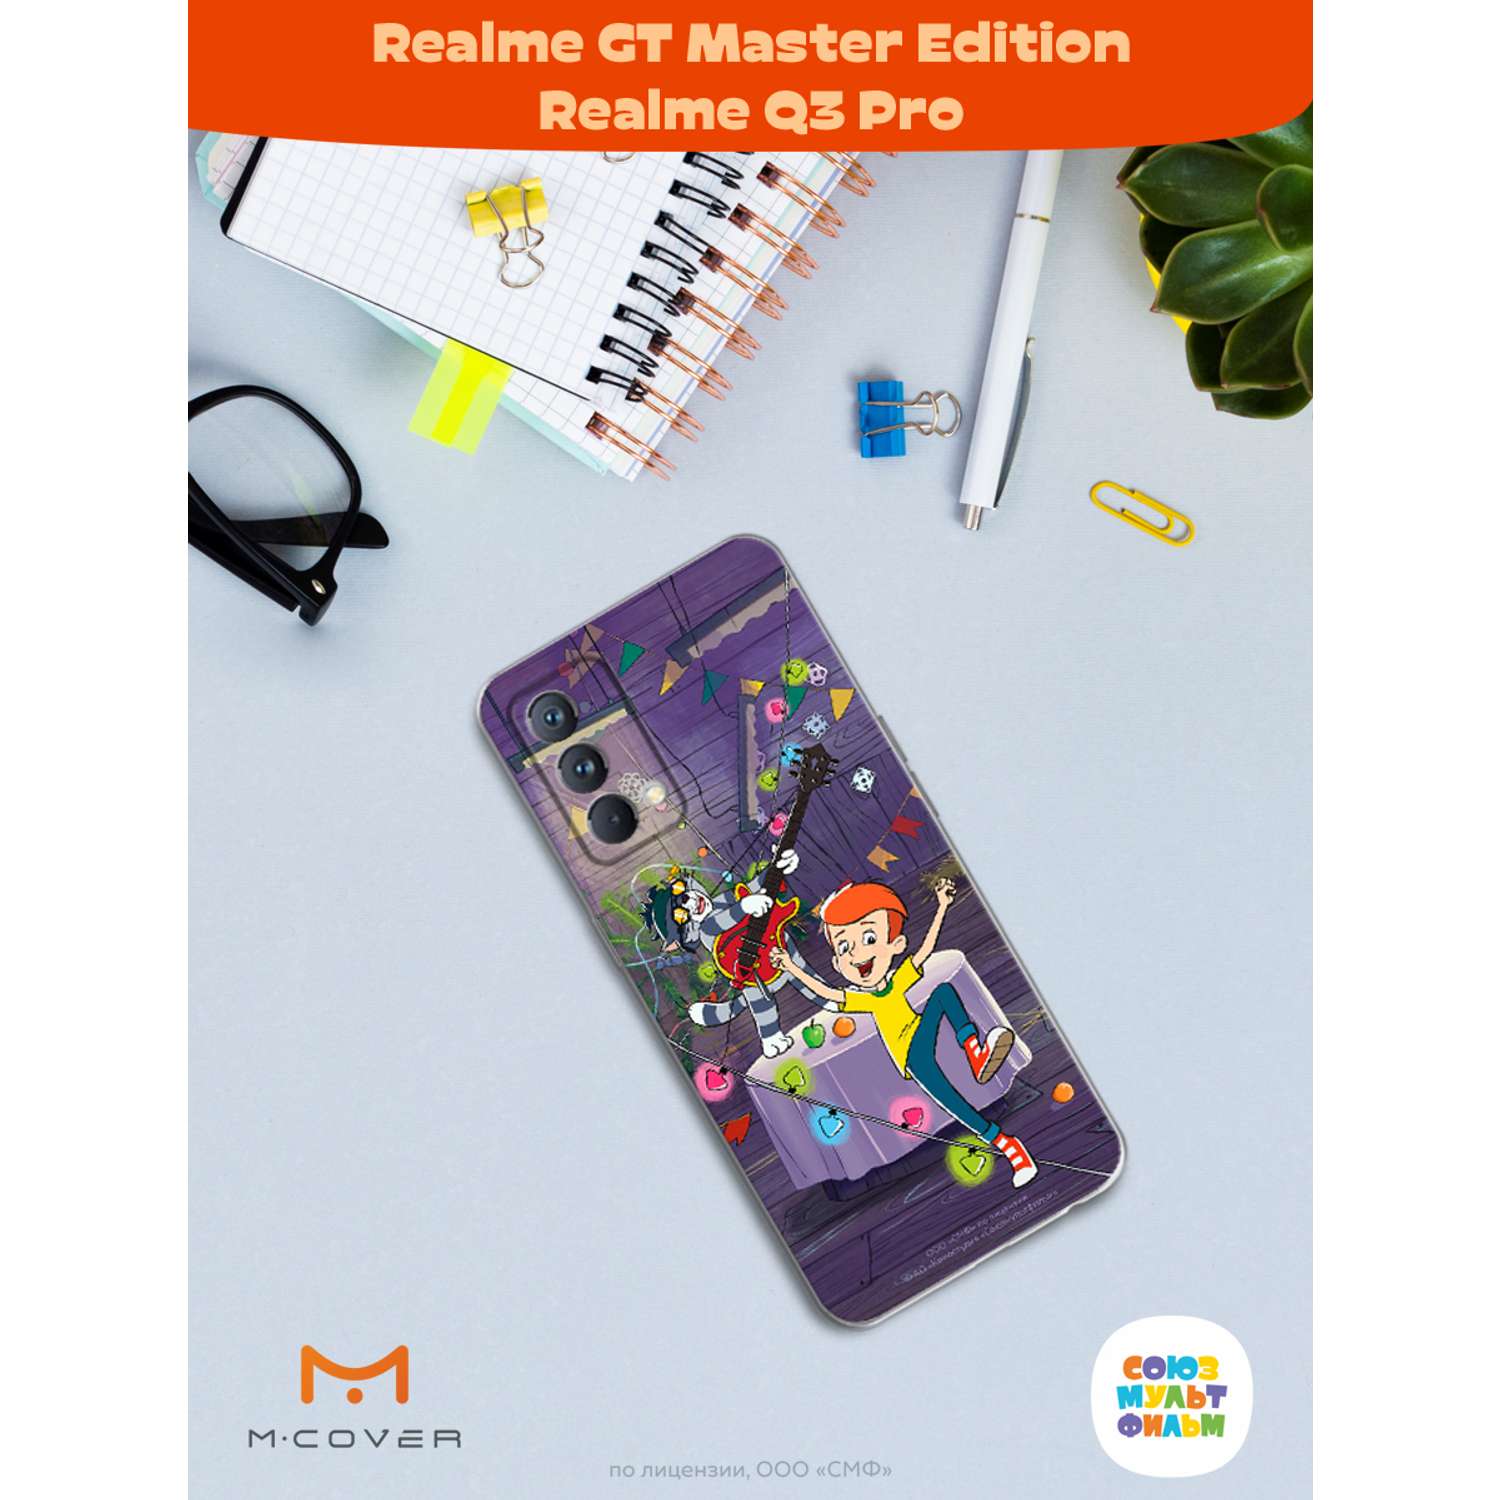 Силиконовый чехол Mcover для смартфона Realme GT Master Edition Q3 Pro Союзмультфильм Матроскин блюз - фото 3